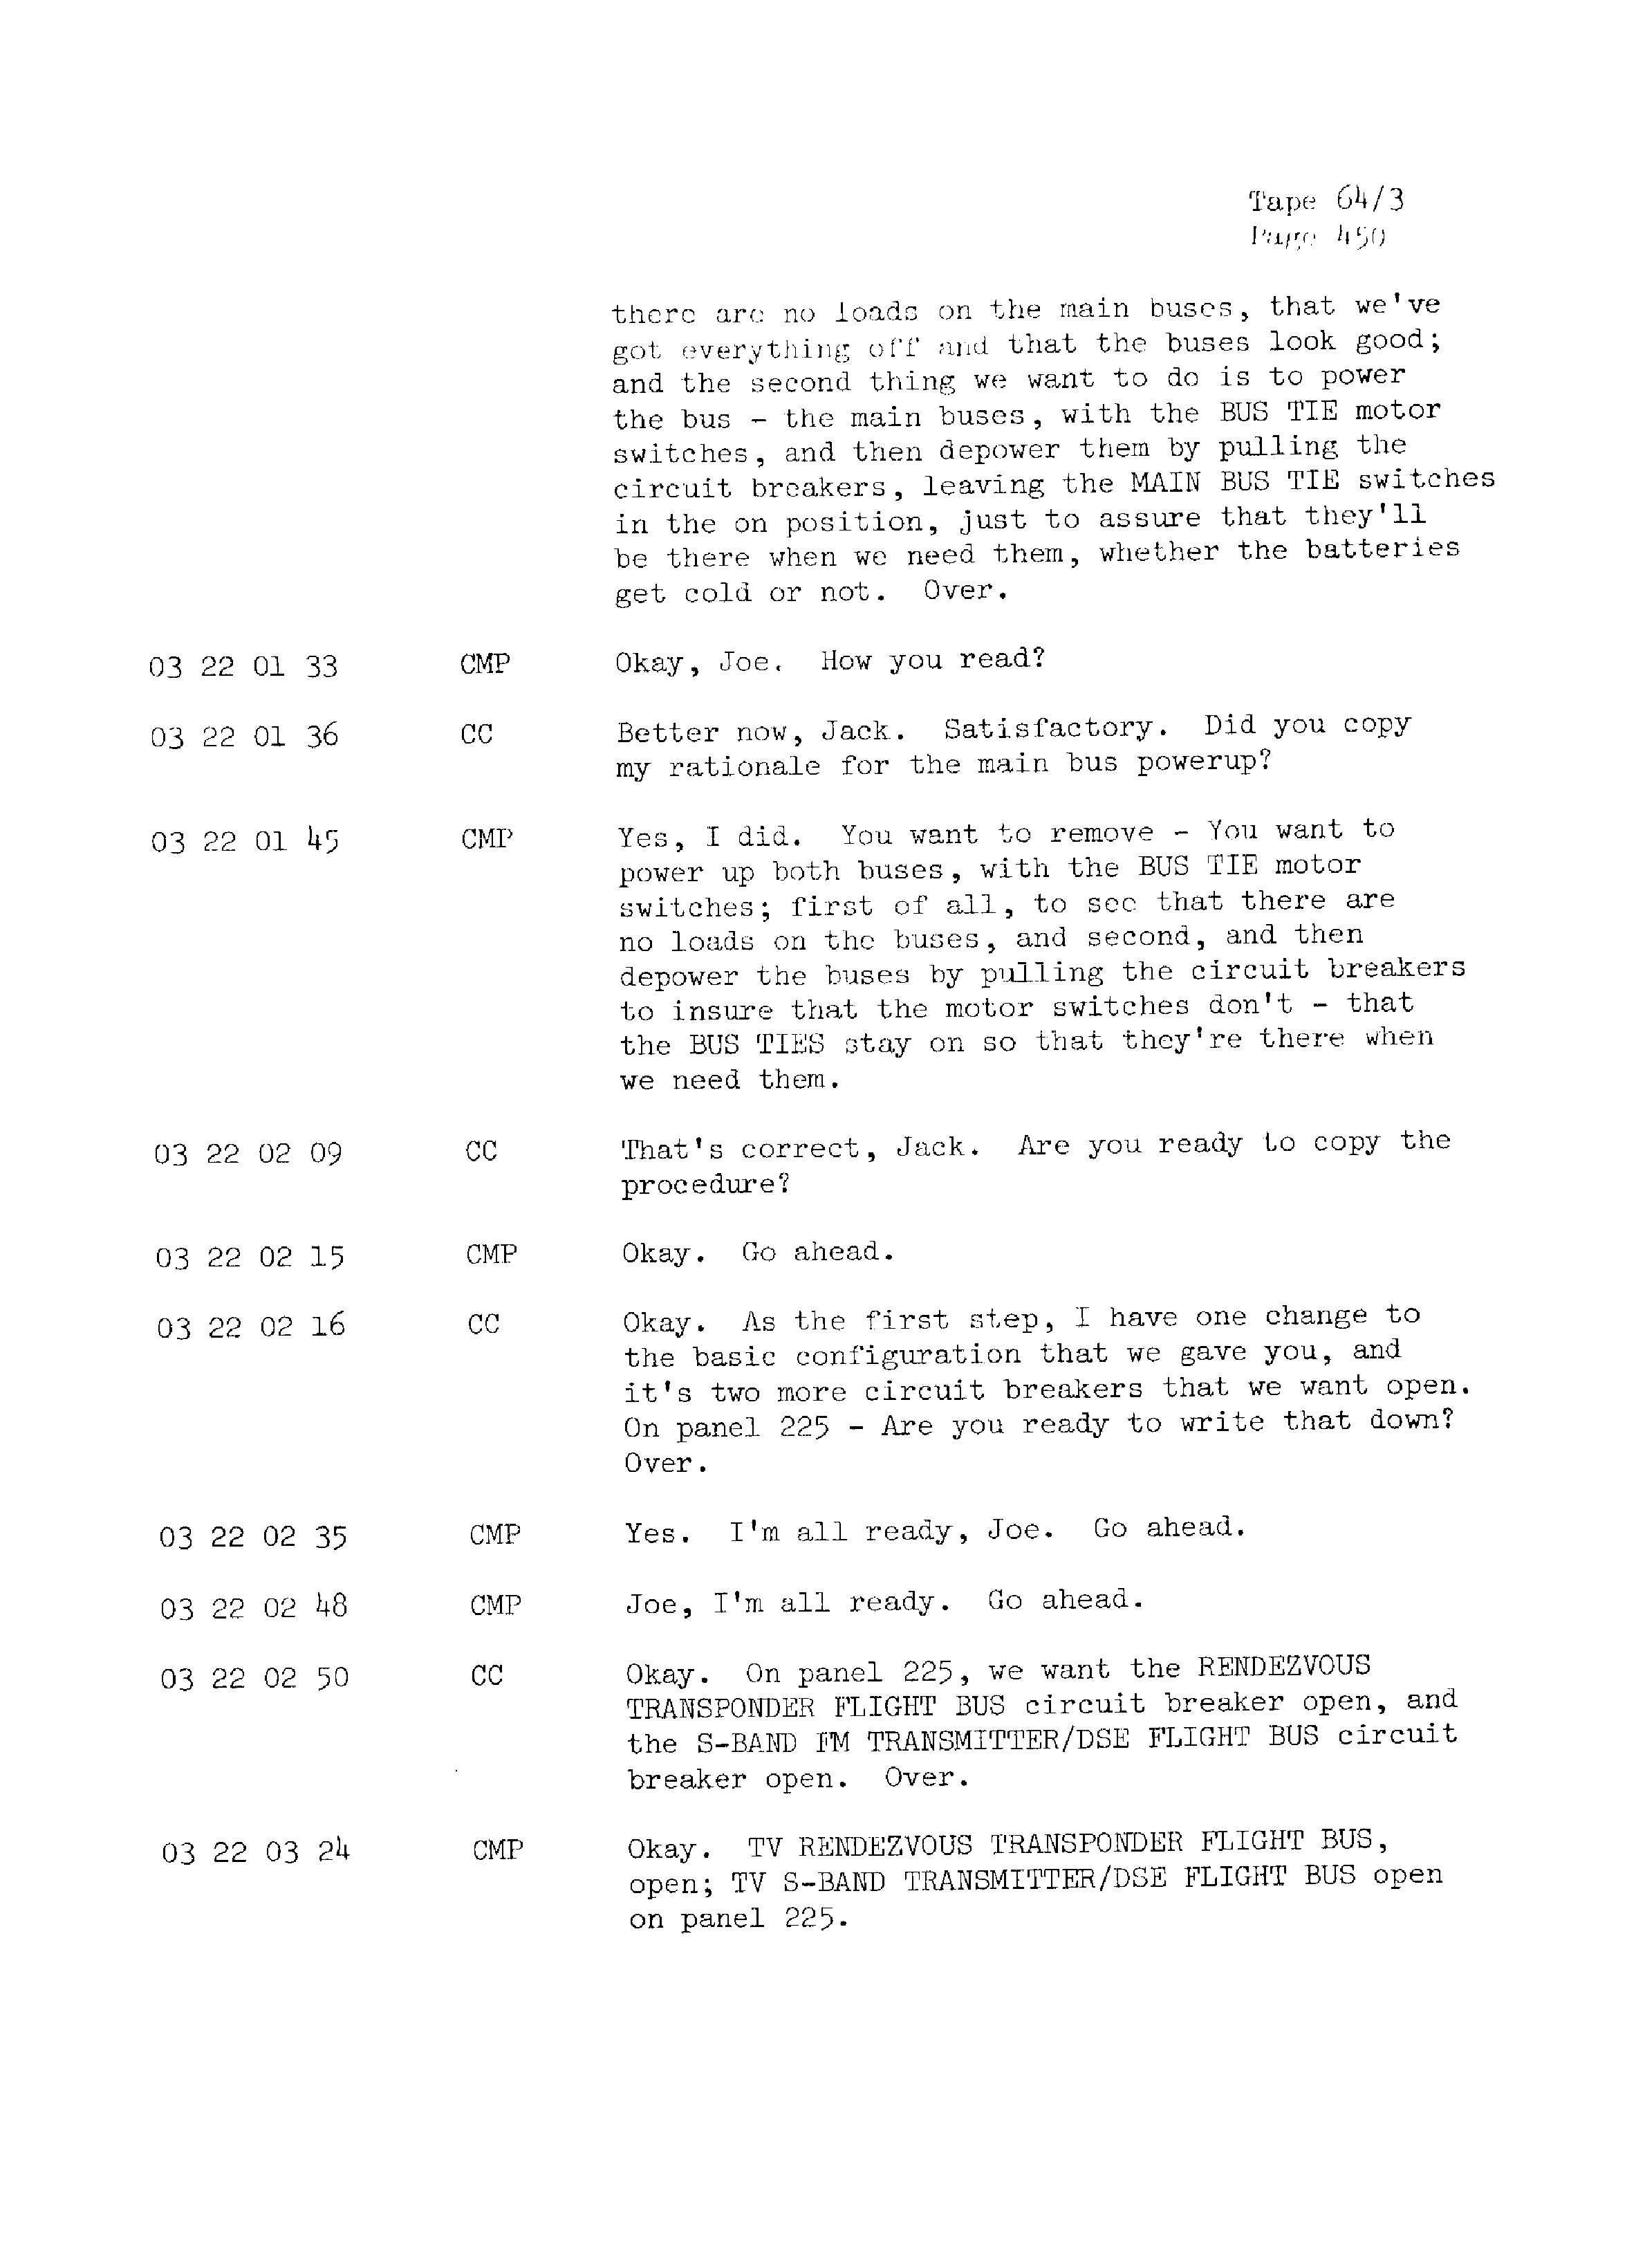 Page 457 of Apollo 13’s original transcript